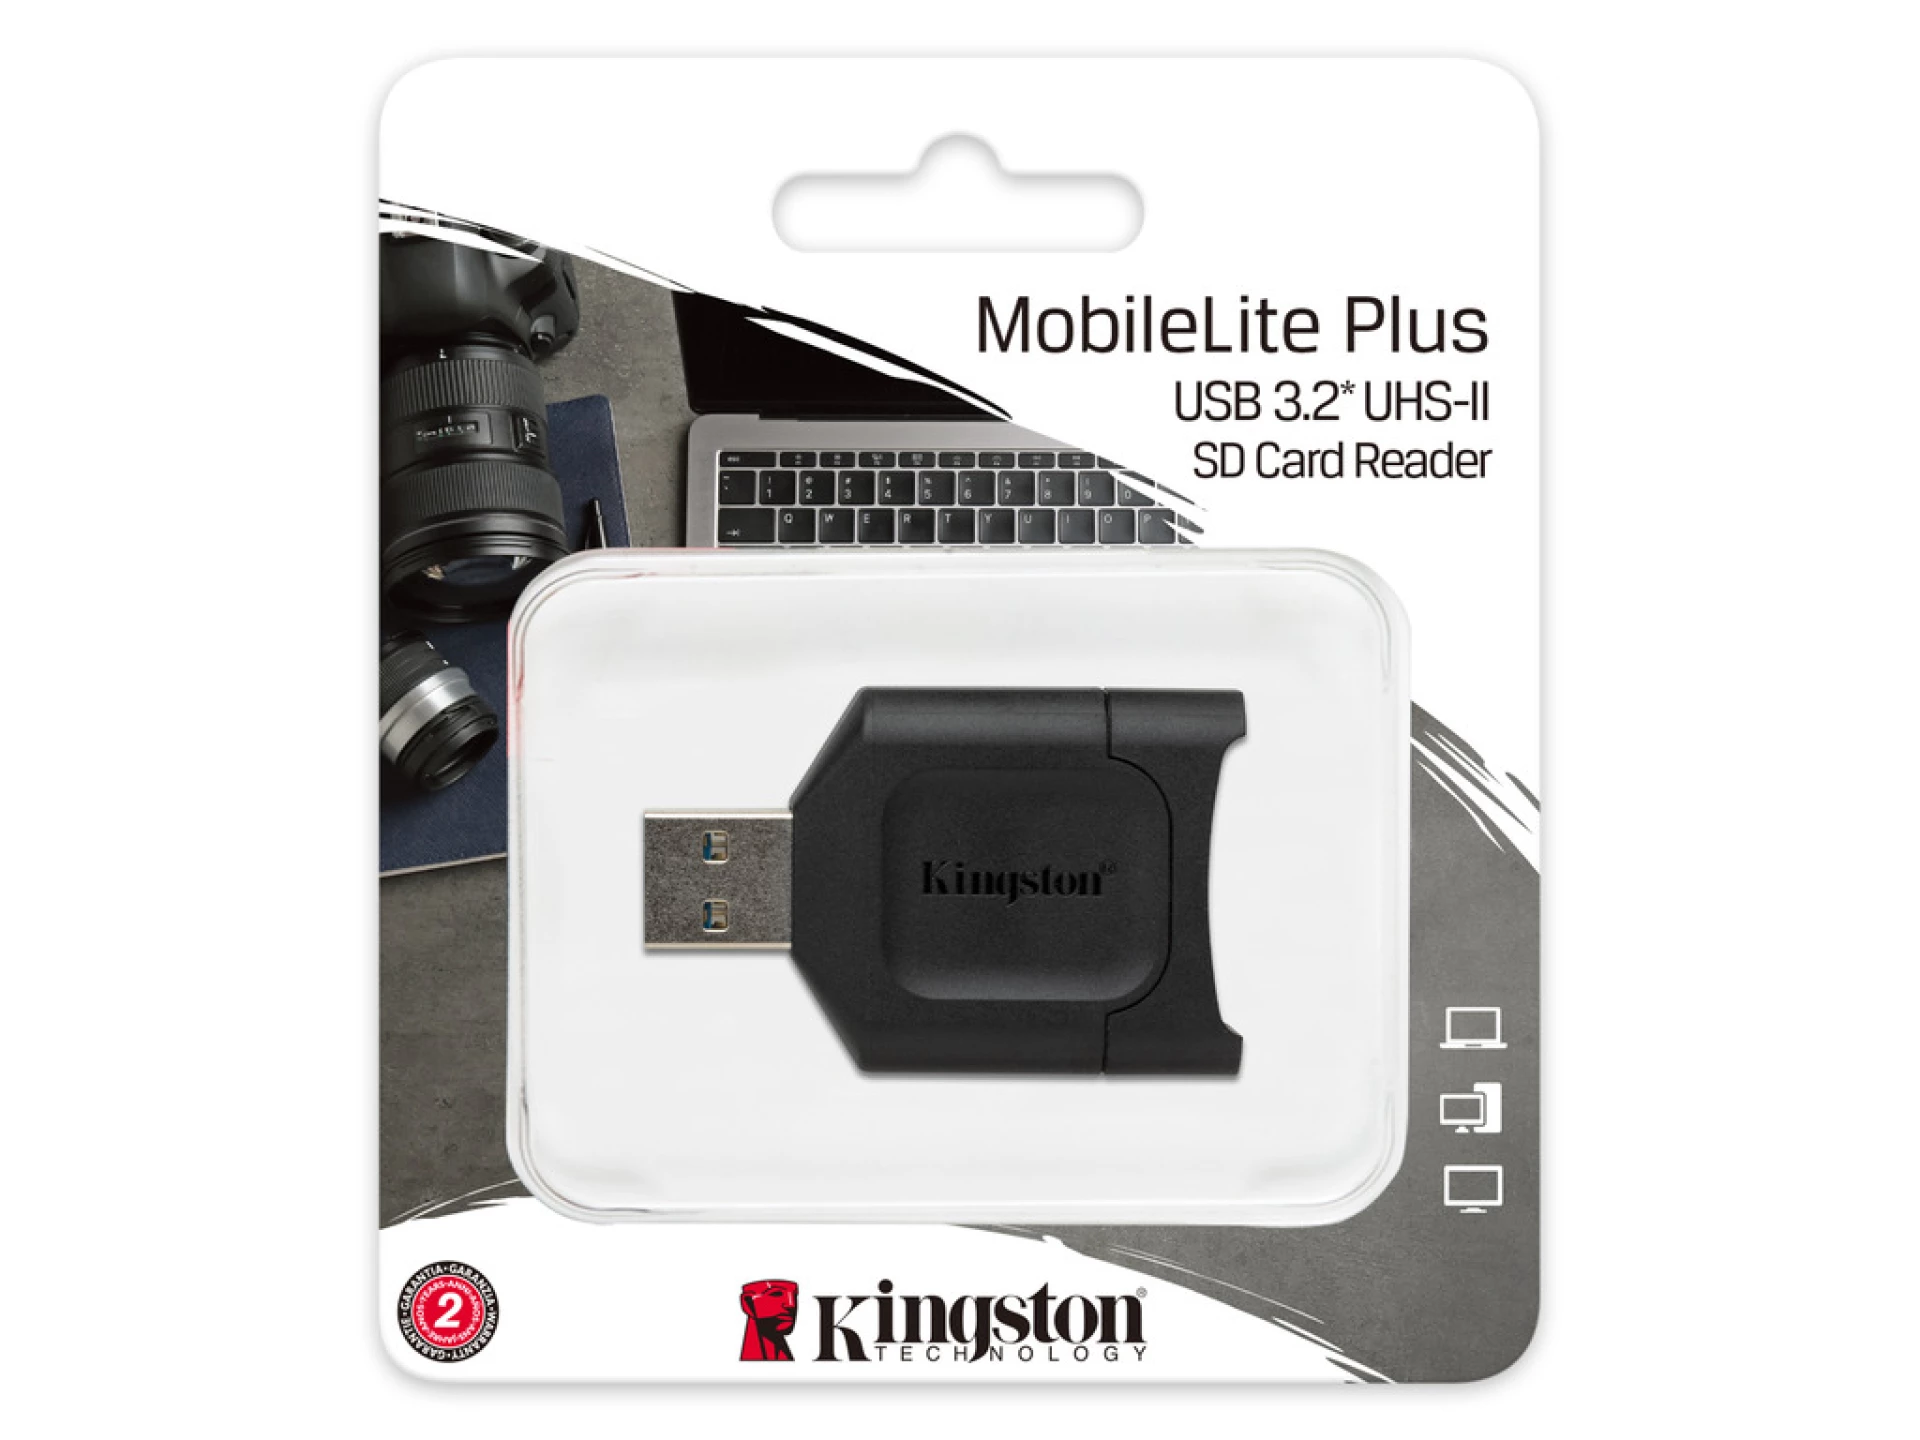 Kingston MobilePlus SD Reader